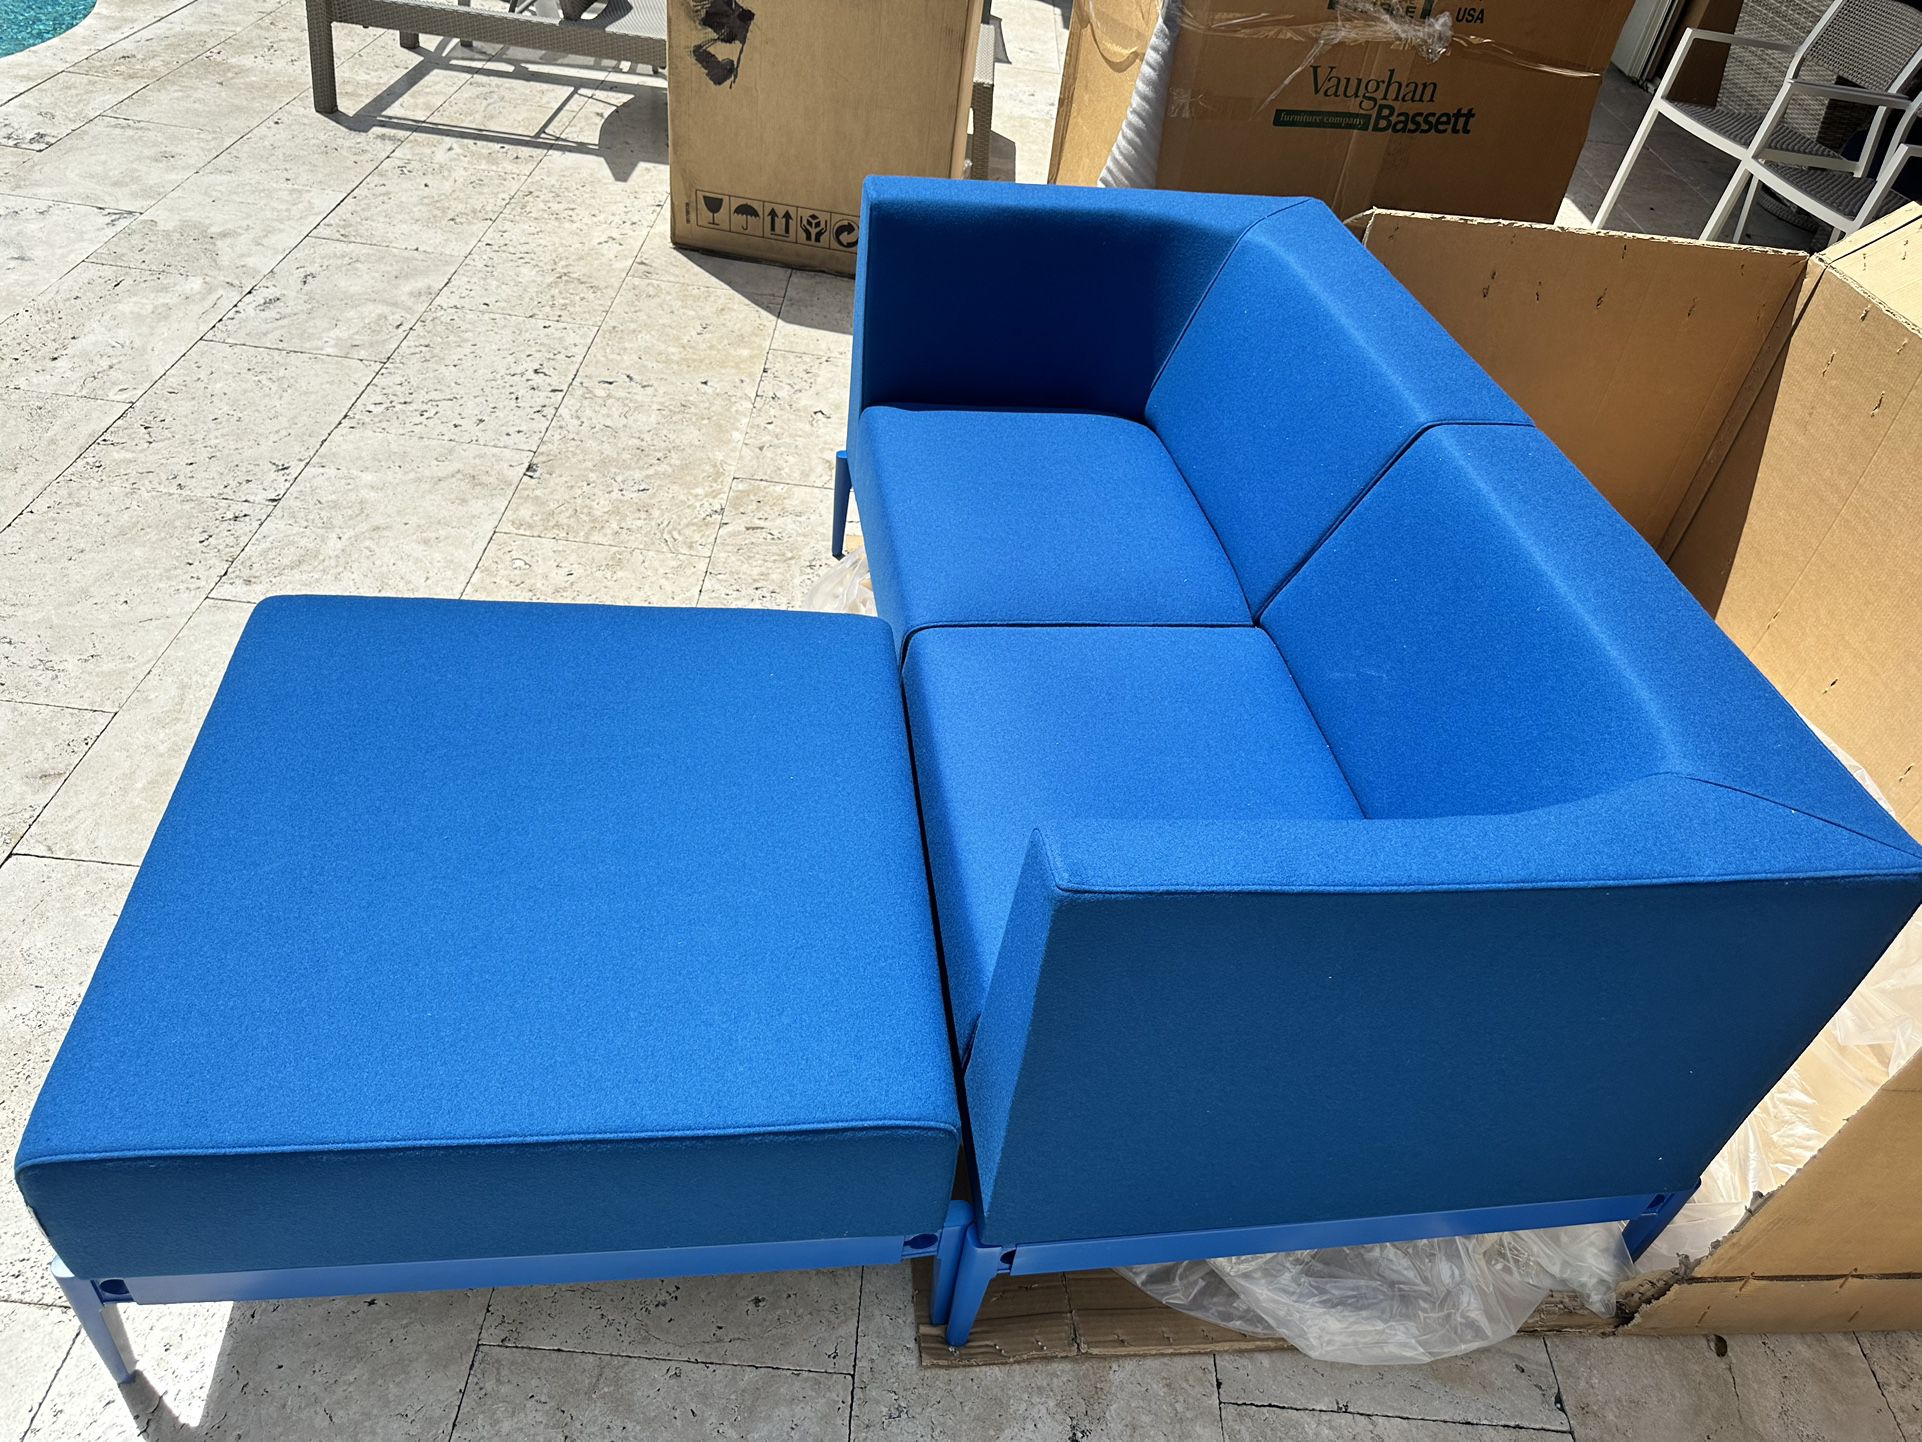 Sofa / Chaise 